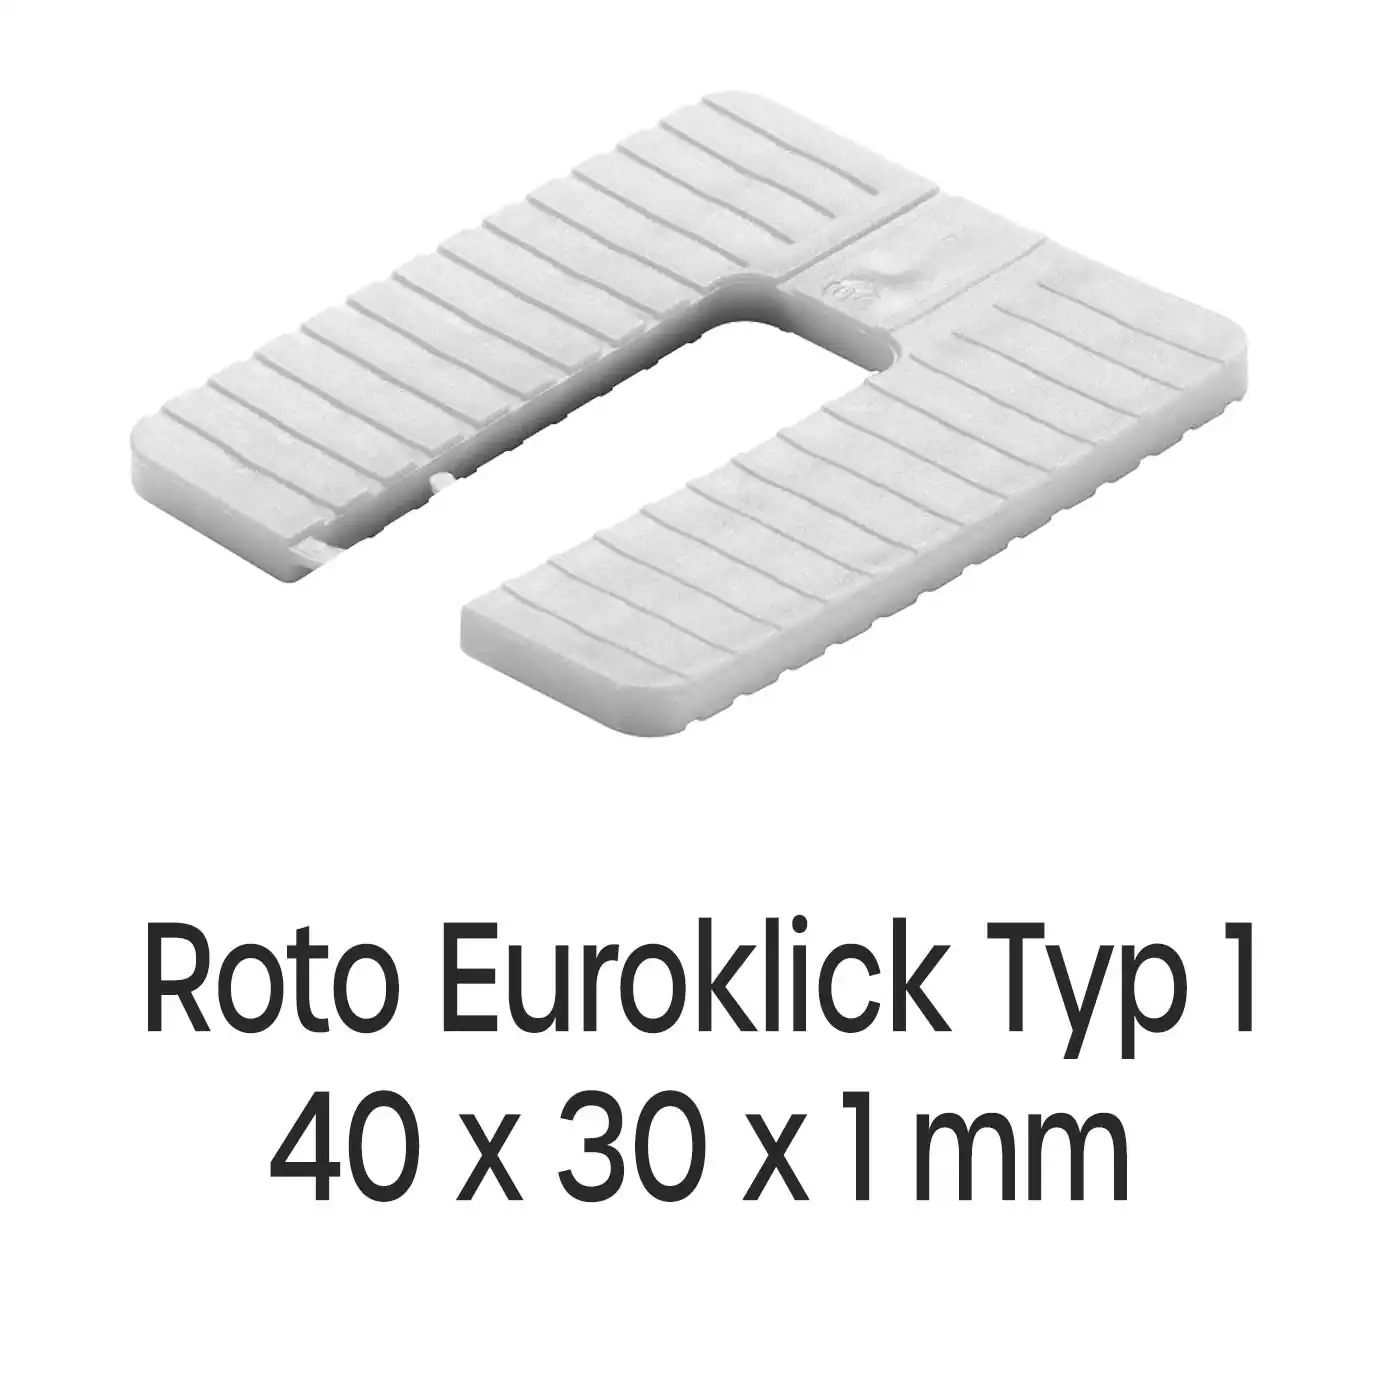 Distanzplatten Roto Euroklick Typ 1 40 x 30 x 1 mm 1000 Stück